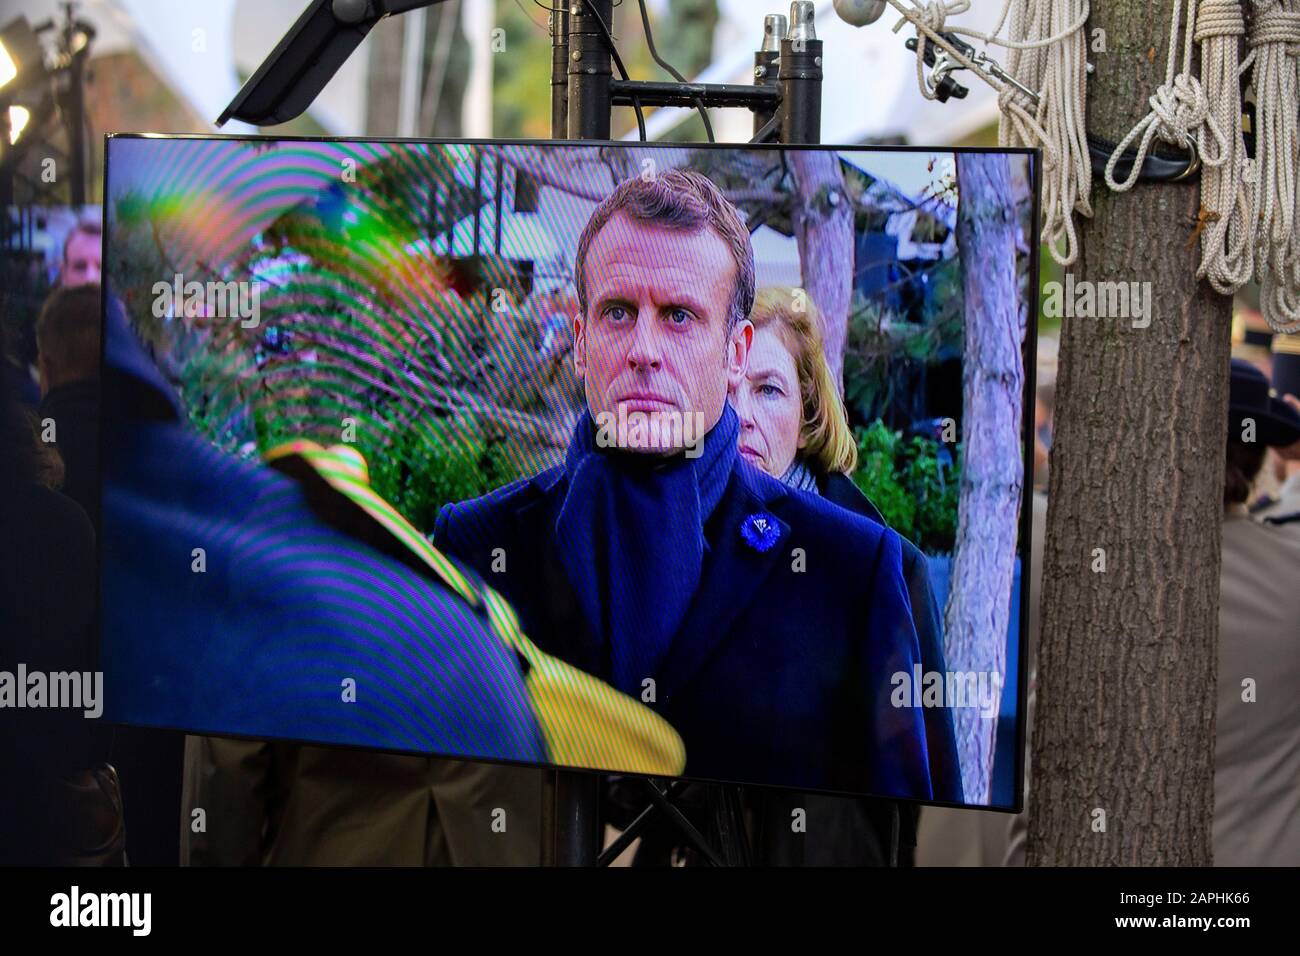 Emmanuel Macron bei der Einweihung des Kriegsdenkmals für Frankreich (OPEX) im Eugénie-Djendi-Garten im André-Citroën-Park. Paris, 11.11.2019 Stock Photo